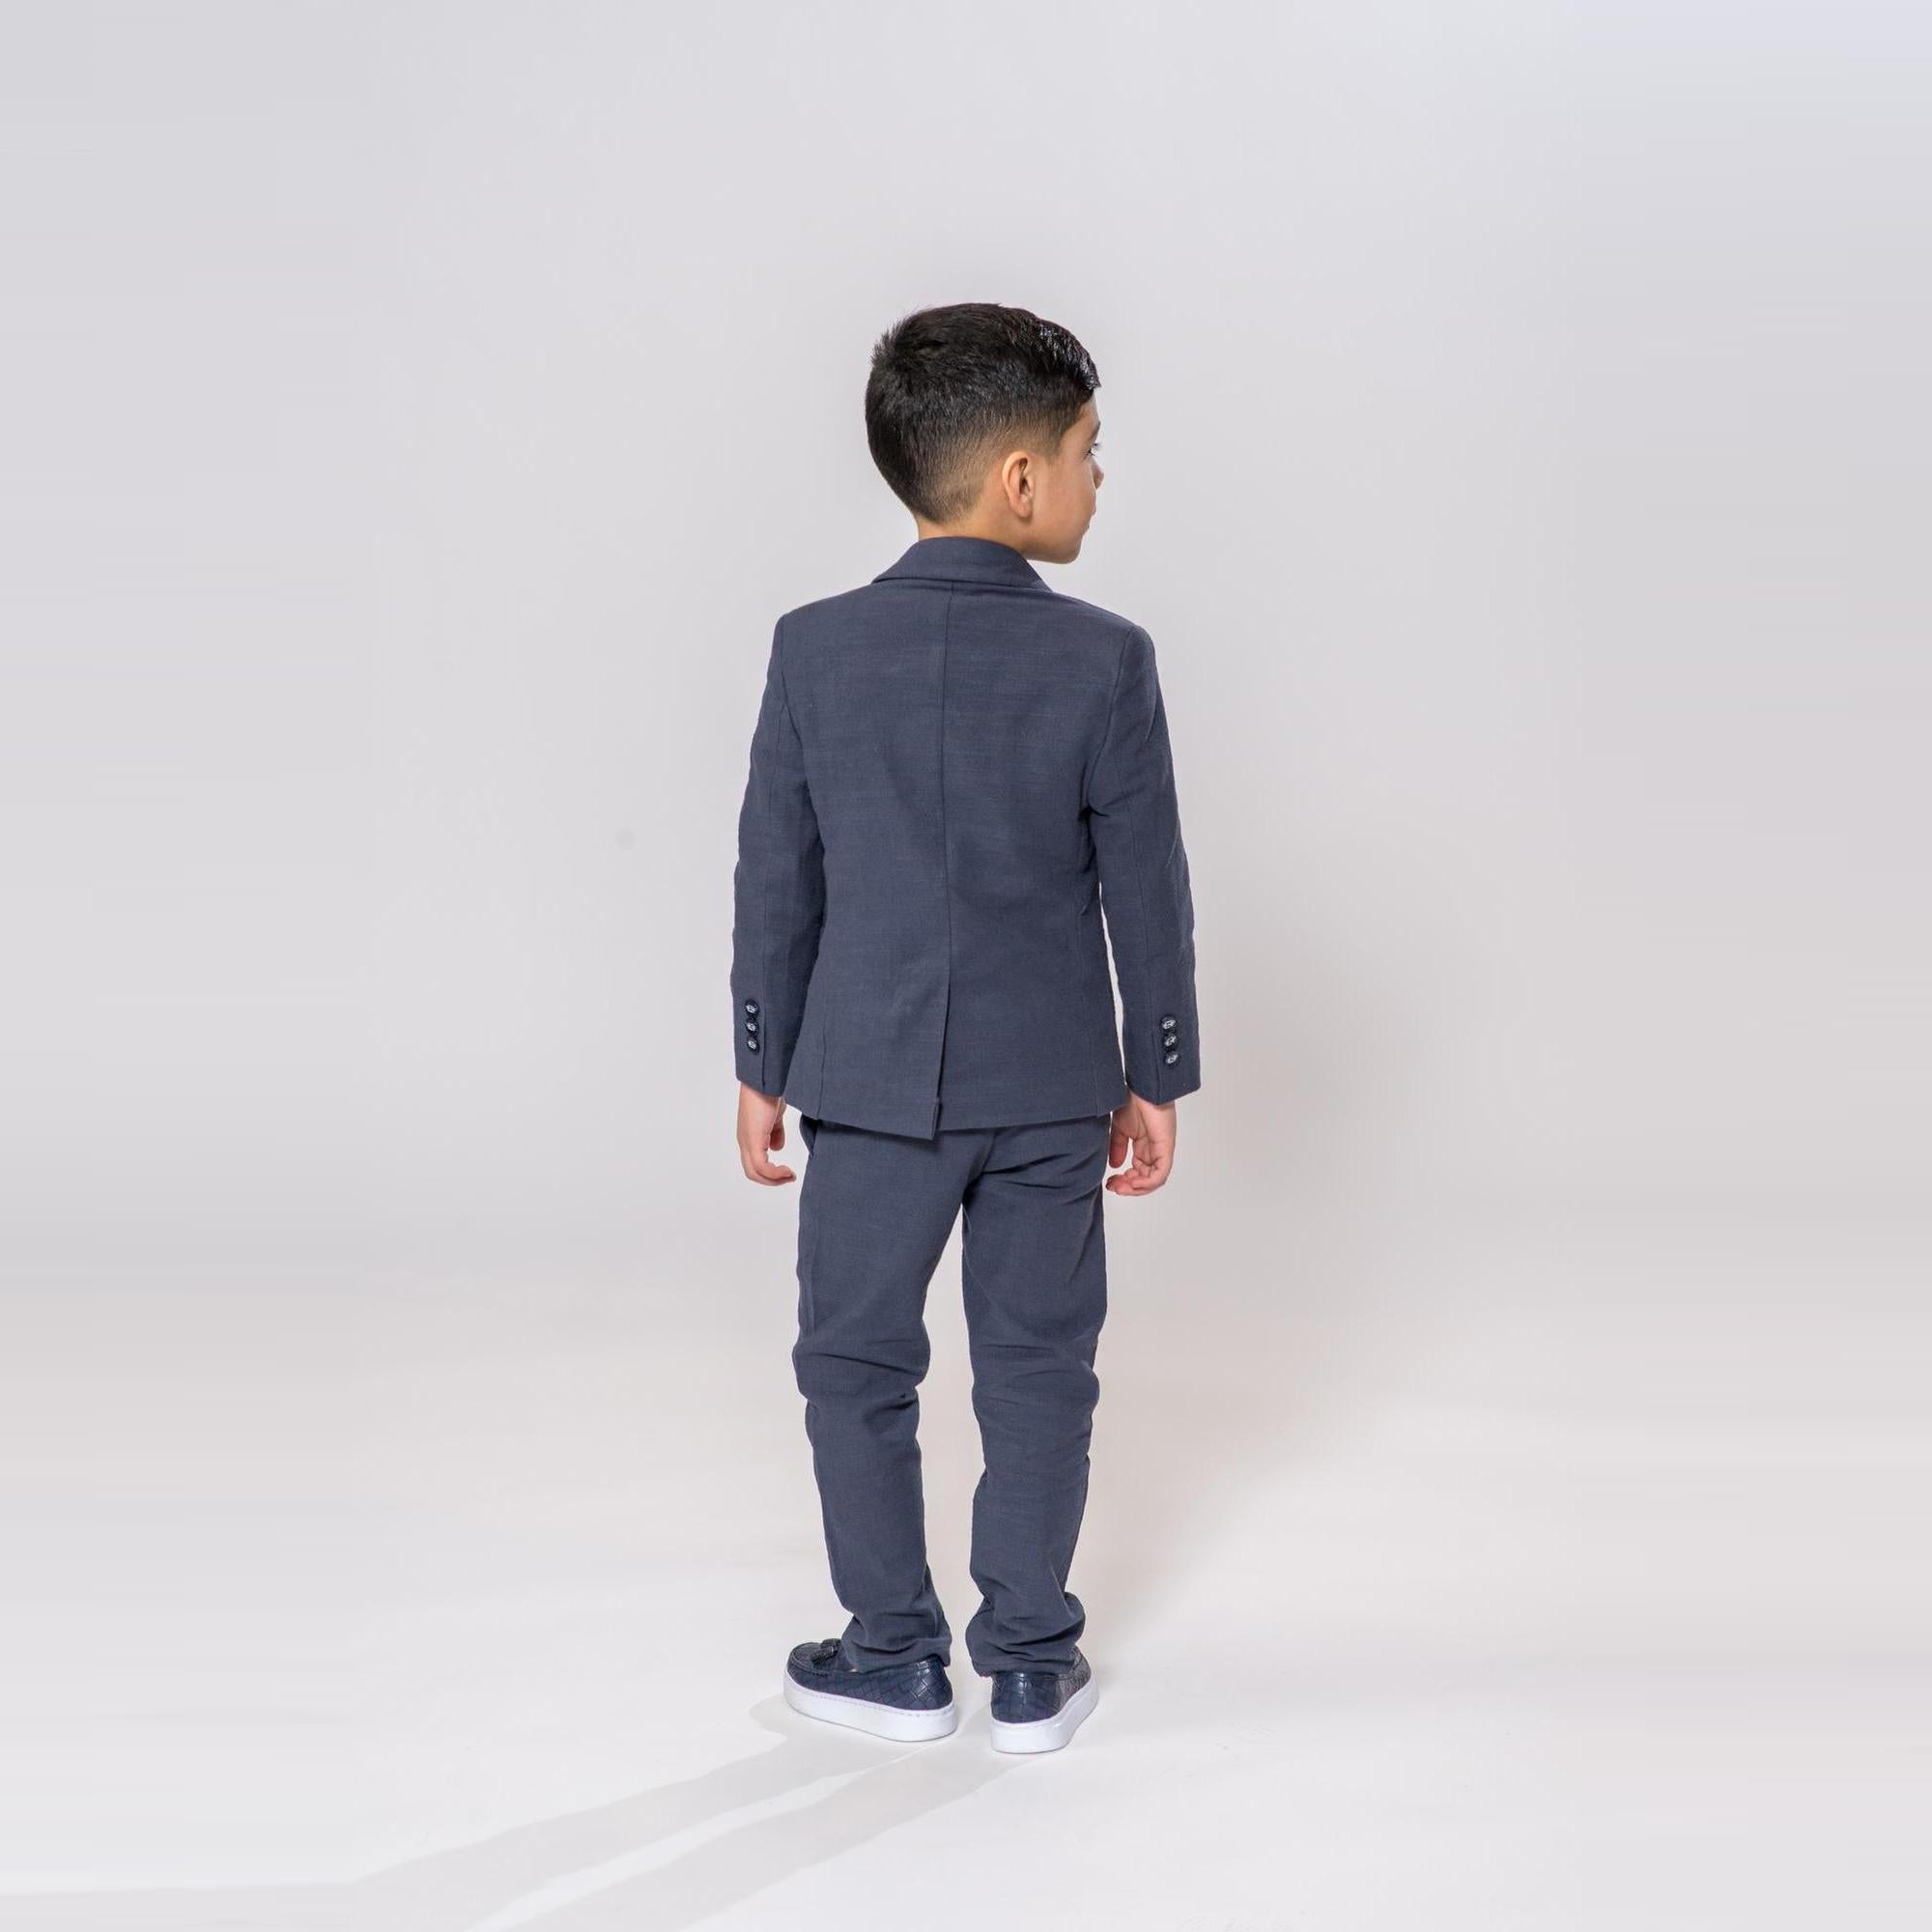 Linen Leo Boys Cool Suit